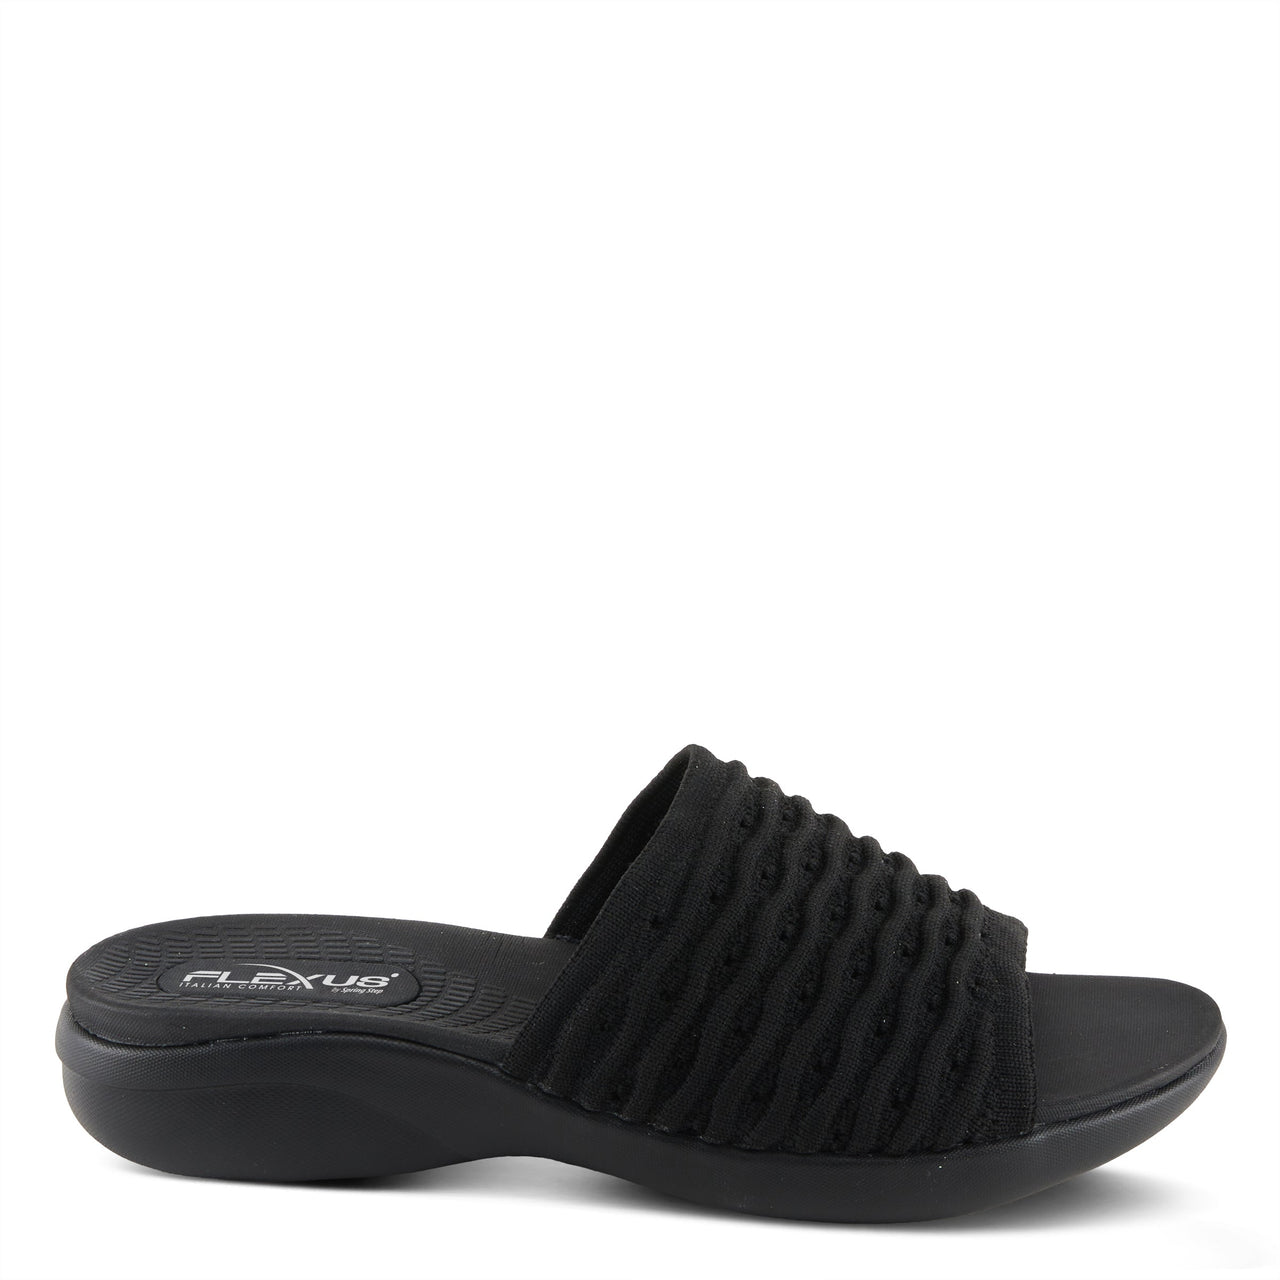 Spring Step Shoes Flexus Deondre Sandals